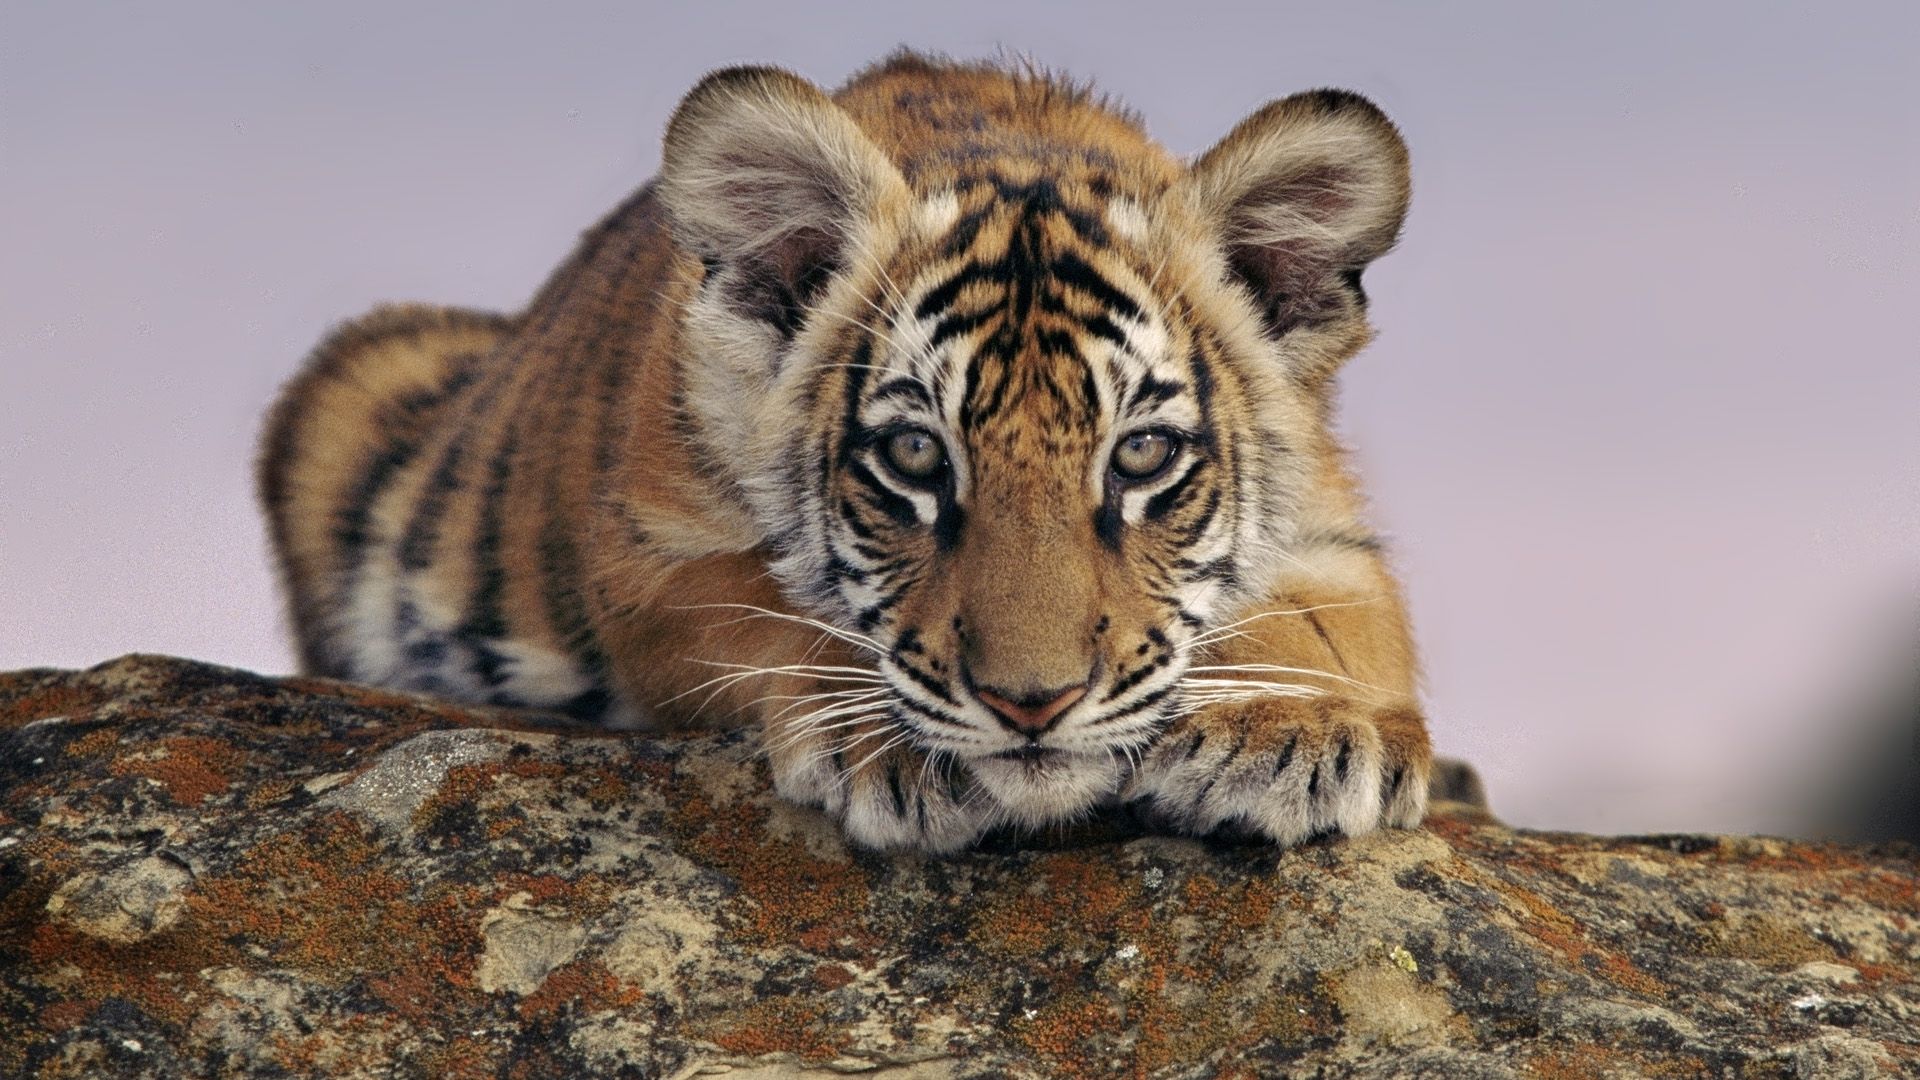 Baby Tiger HD Wallpaper | 1920x1080 | ID:43776